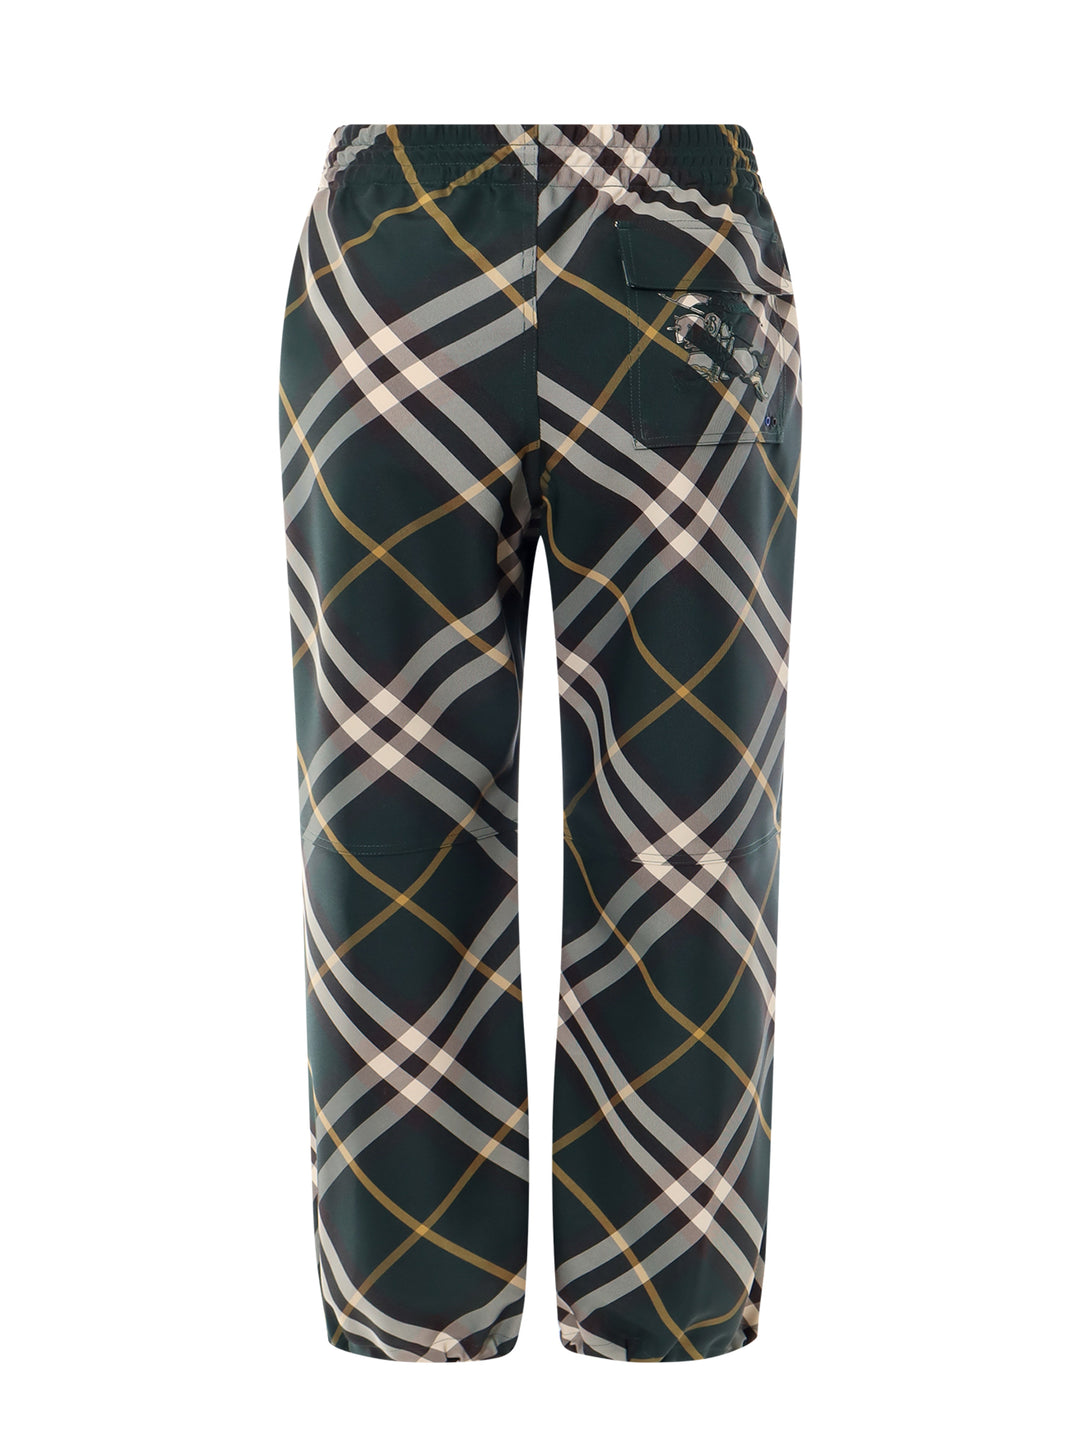 Pantalone in nylon con stampa Burberry Check